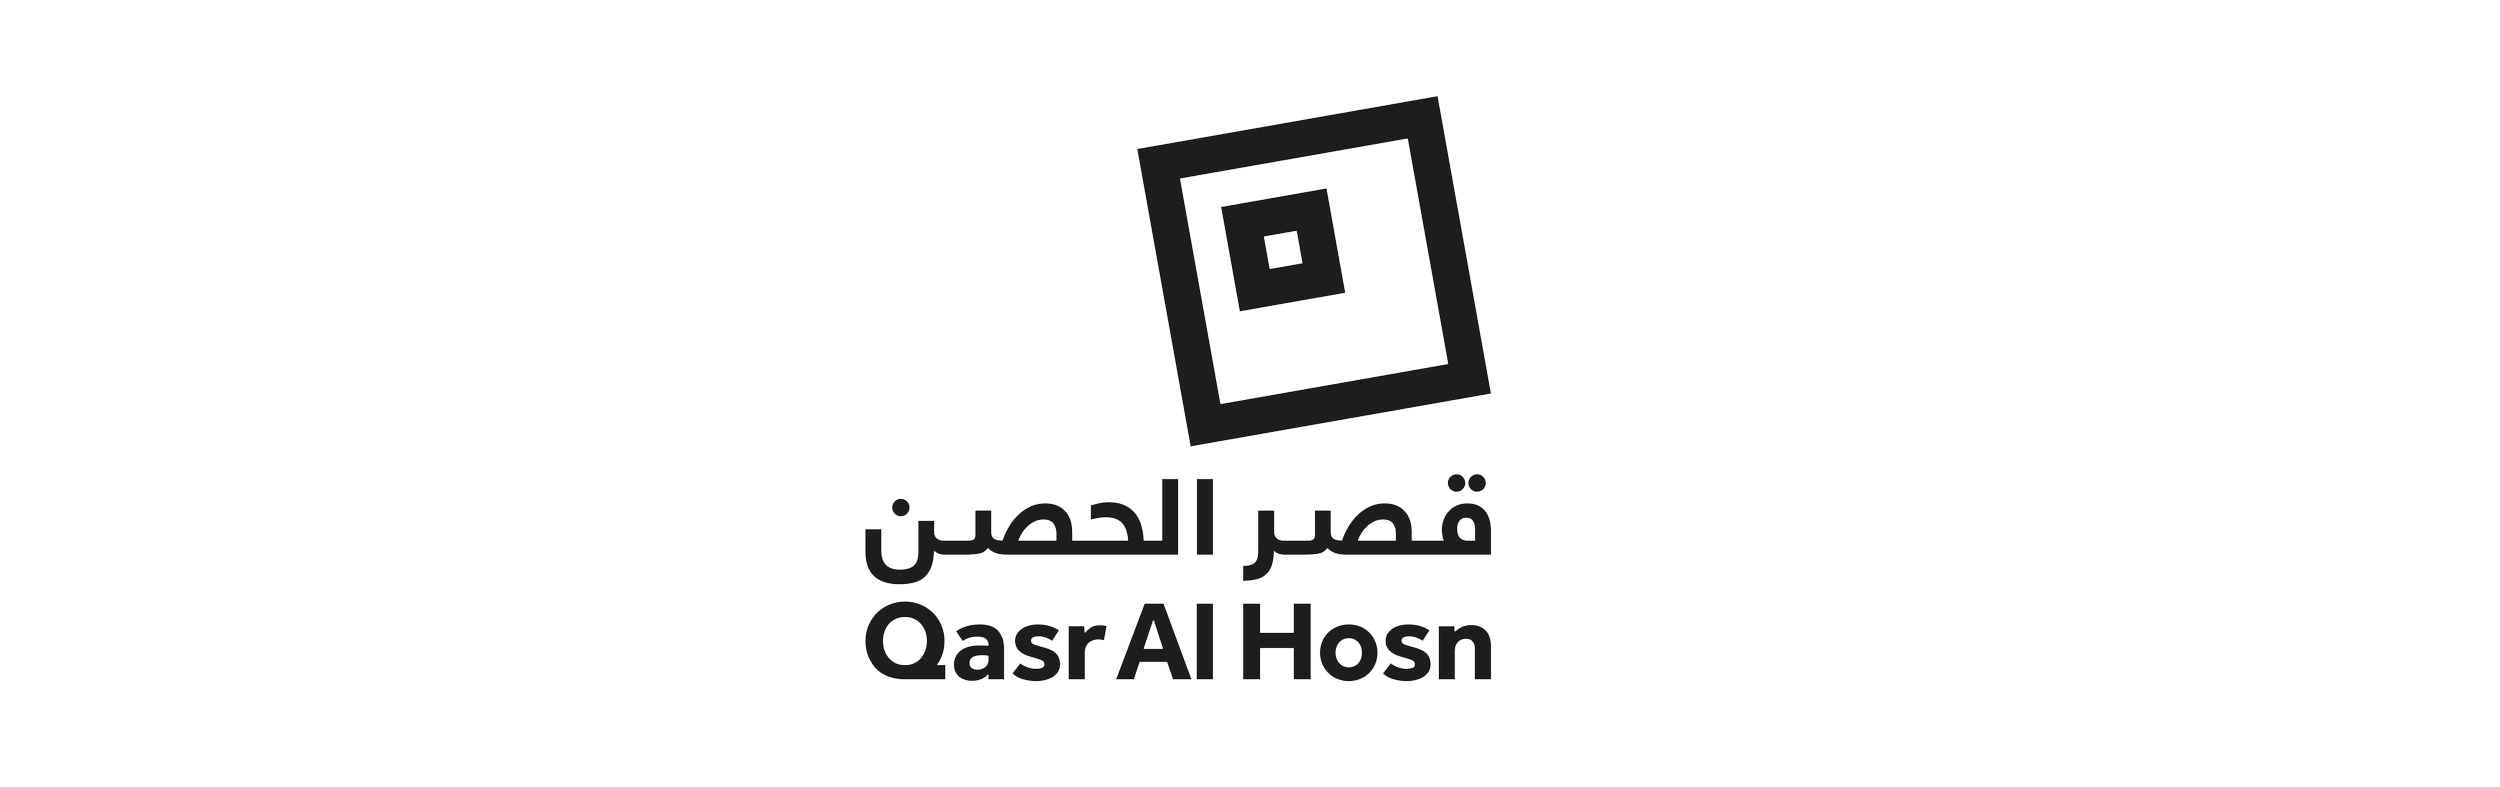 Qasr_al_hosn.png